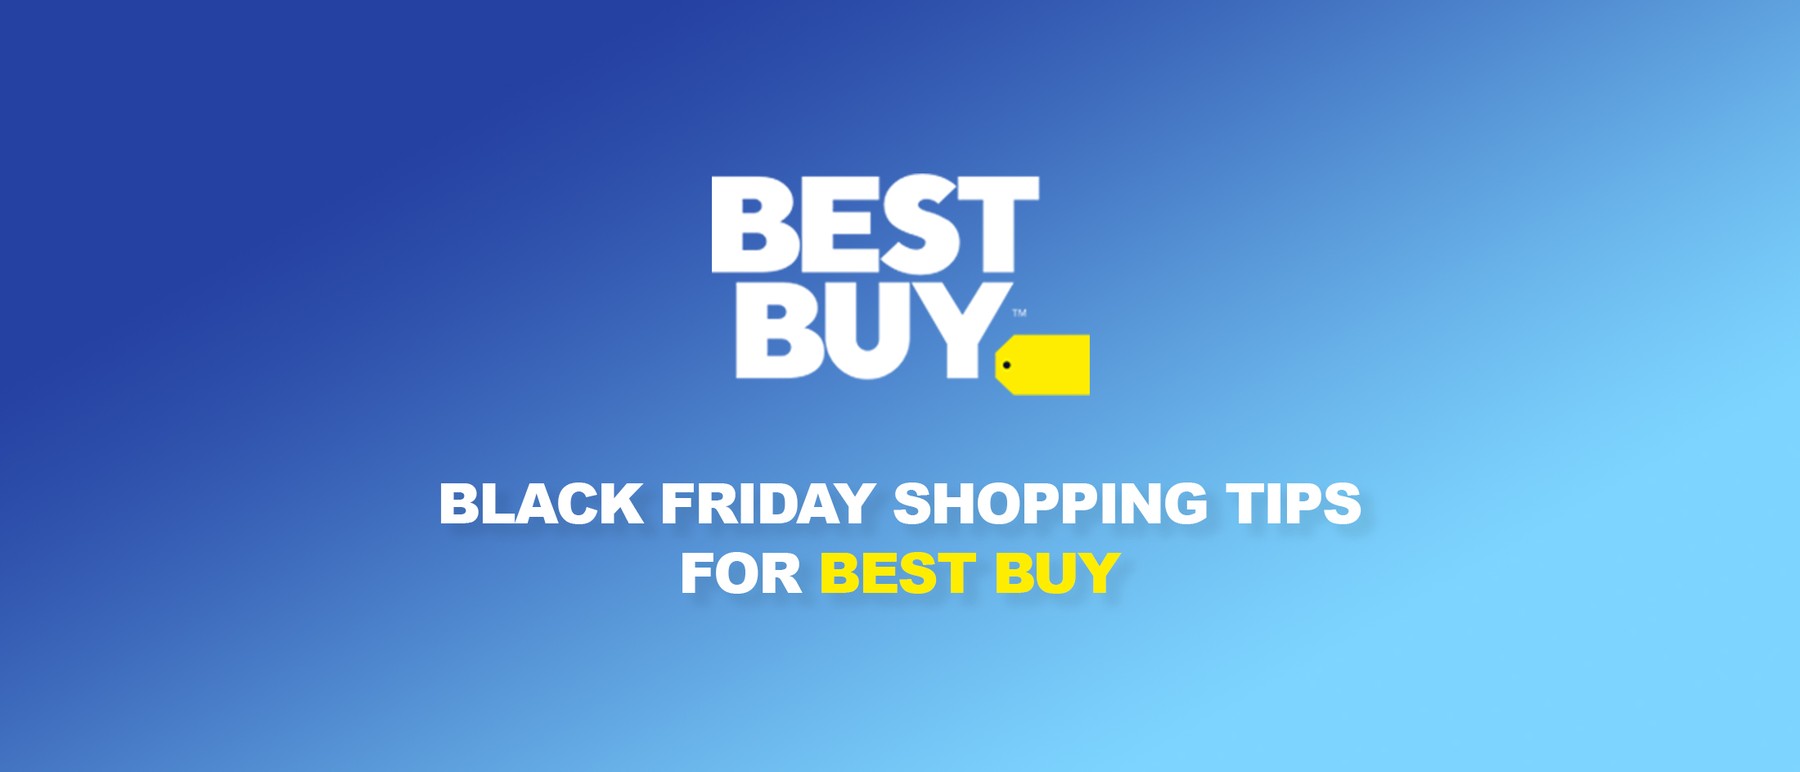 Black Friday Shopping Tips for Best Buy